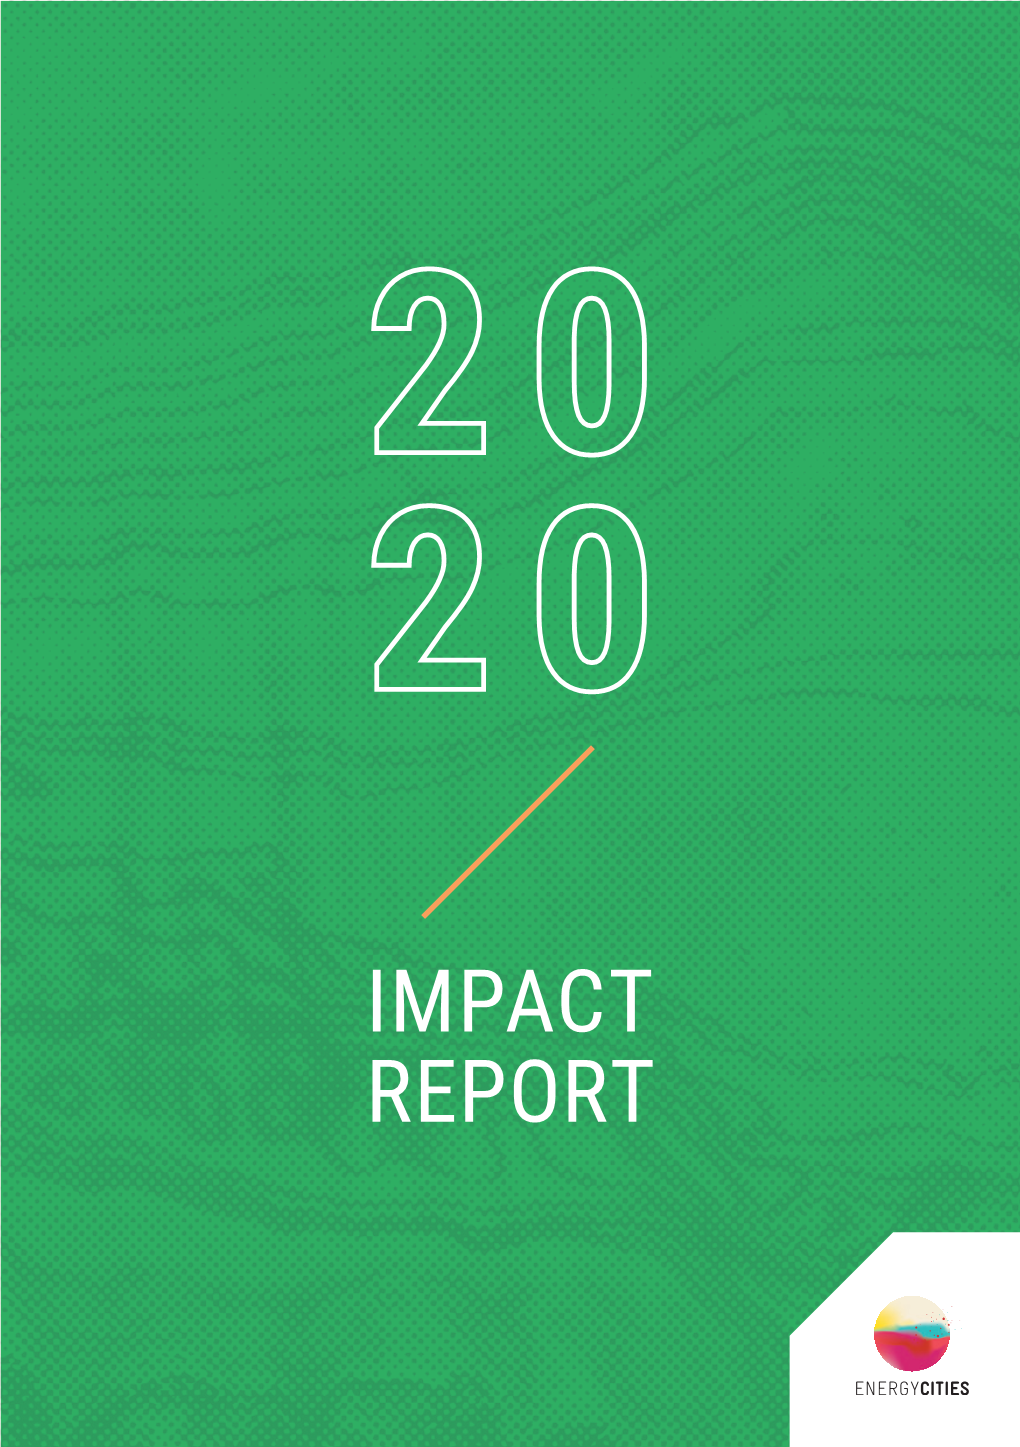 Impact Report Impact Report 2 0 Impact 2 0 Report